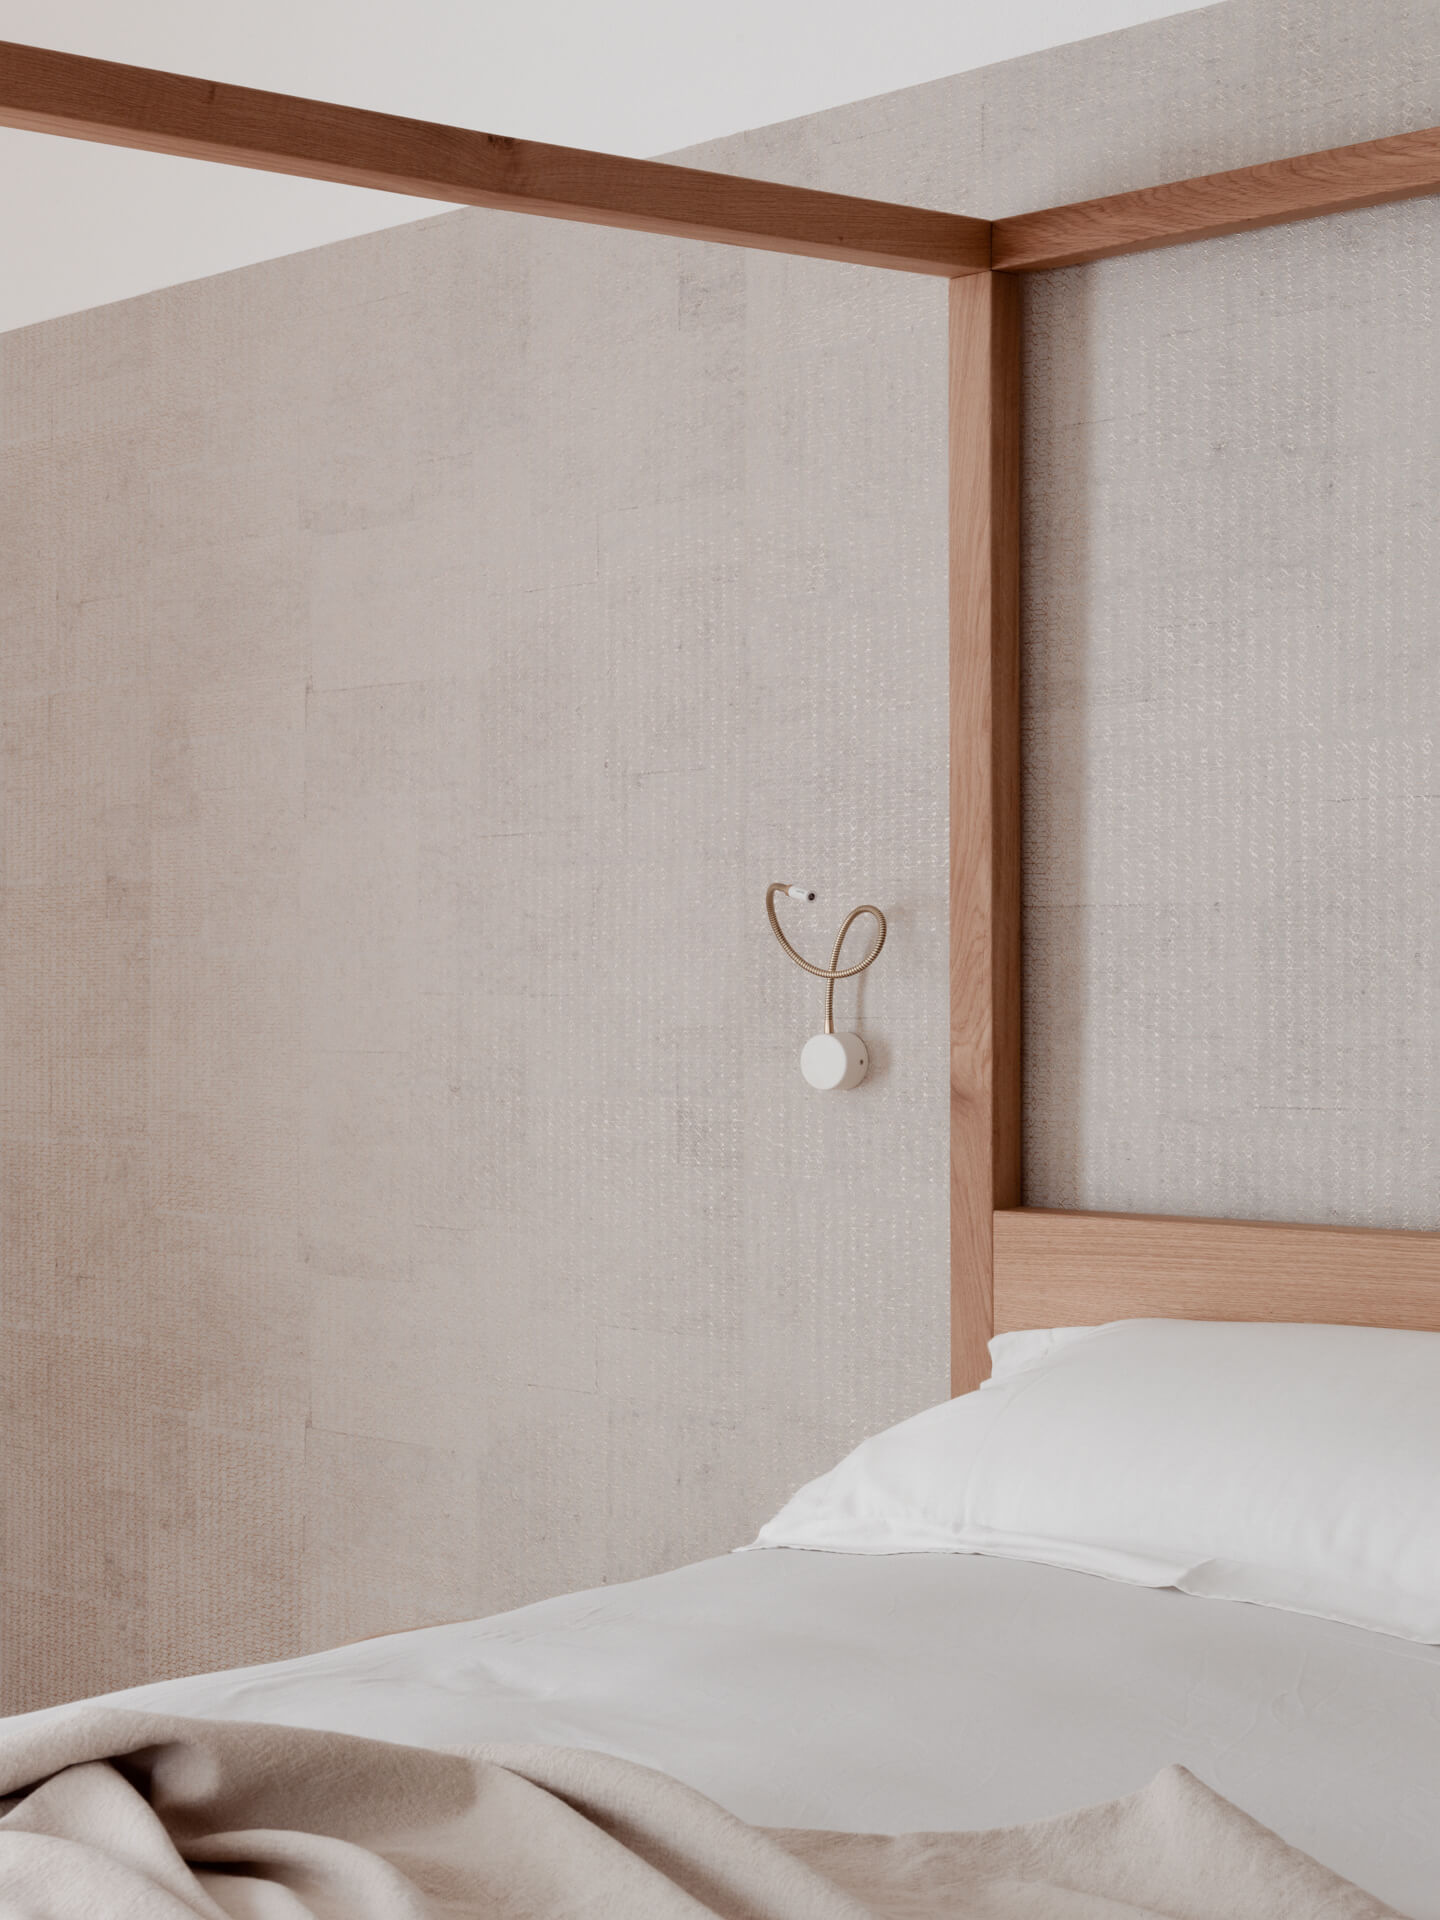 Terra del Sole suites - Hotel Design - Letto a baldacchino